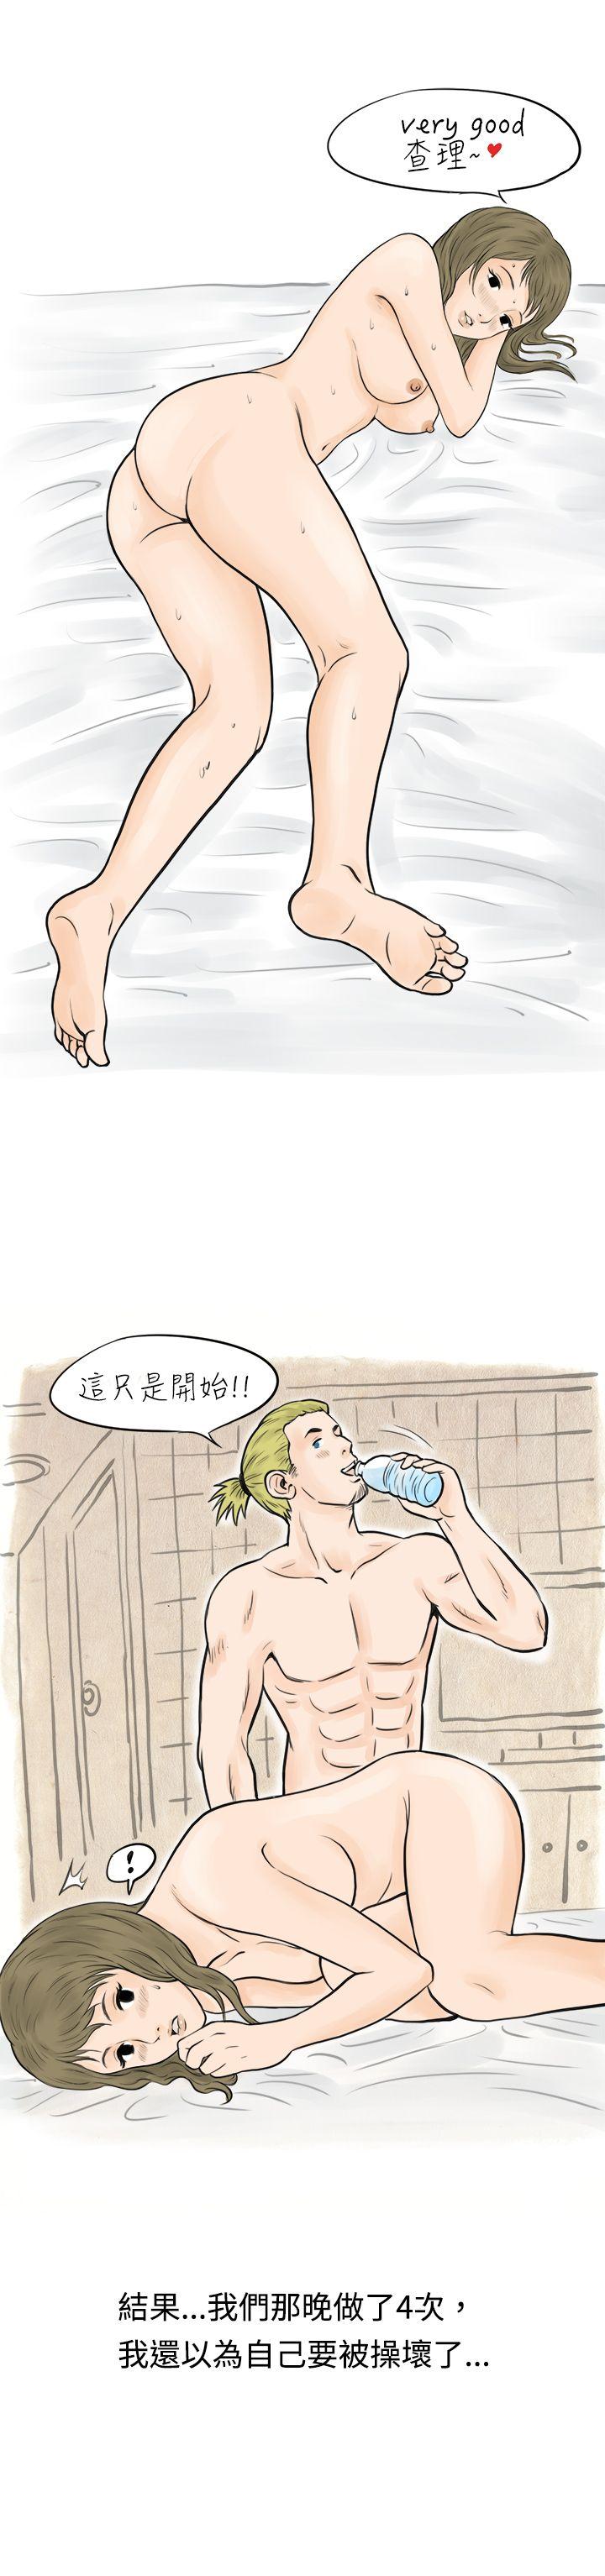 秘密Story  在梨泰院游泳池中的小故事(下) 漫画图片13.jpg